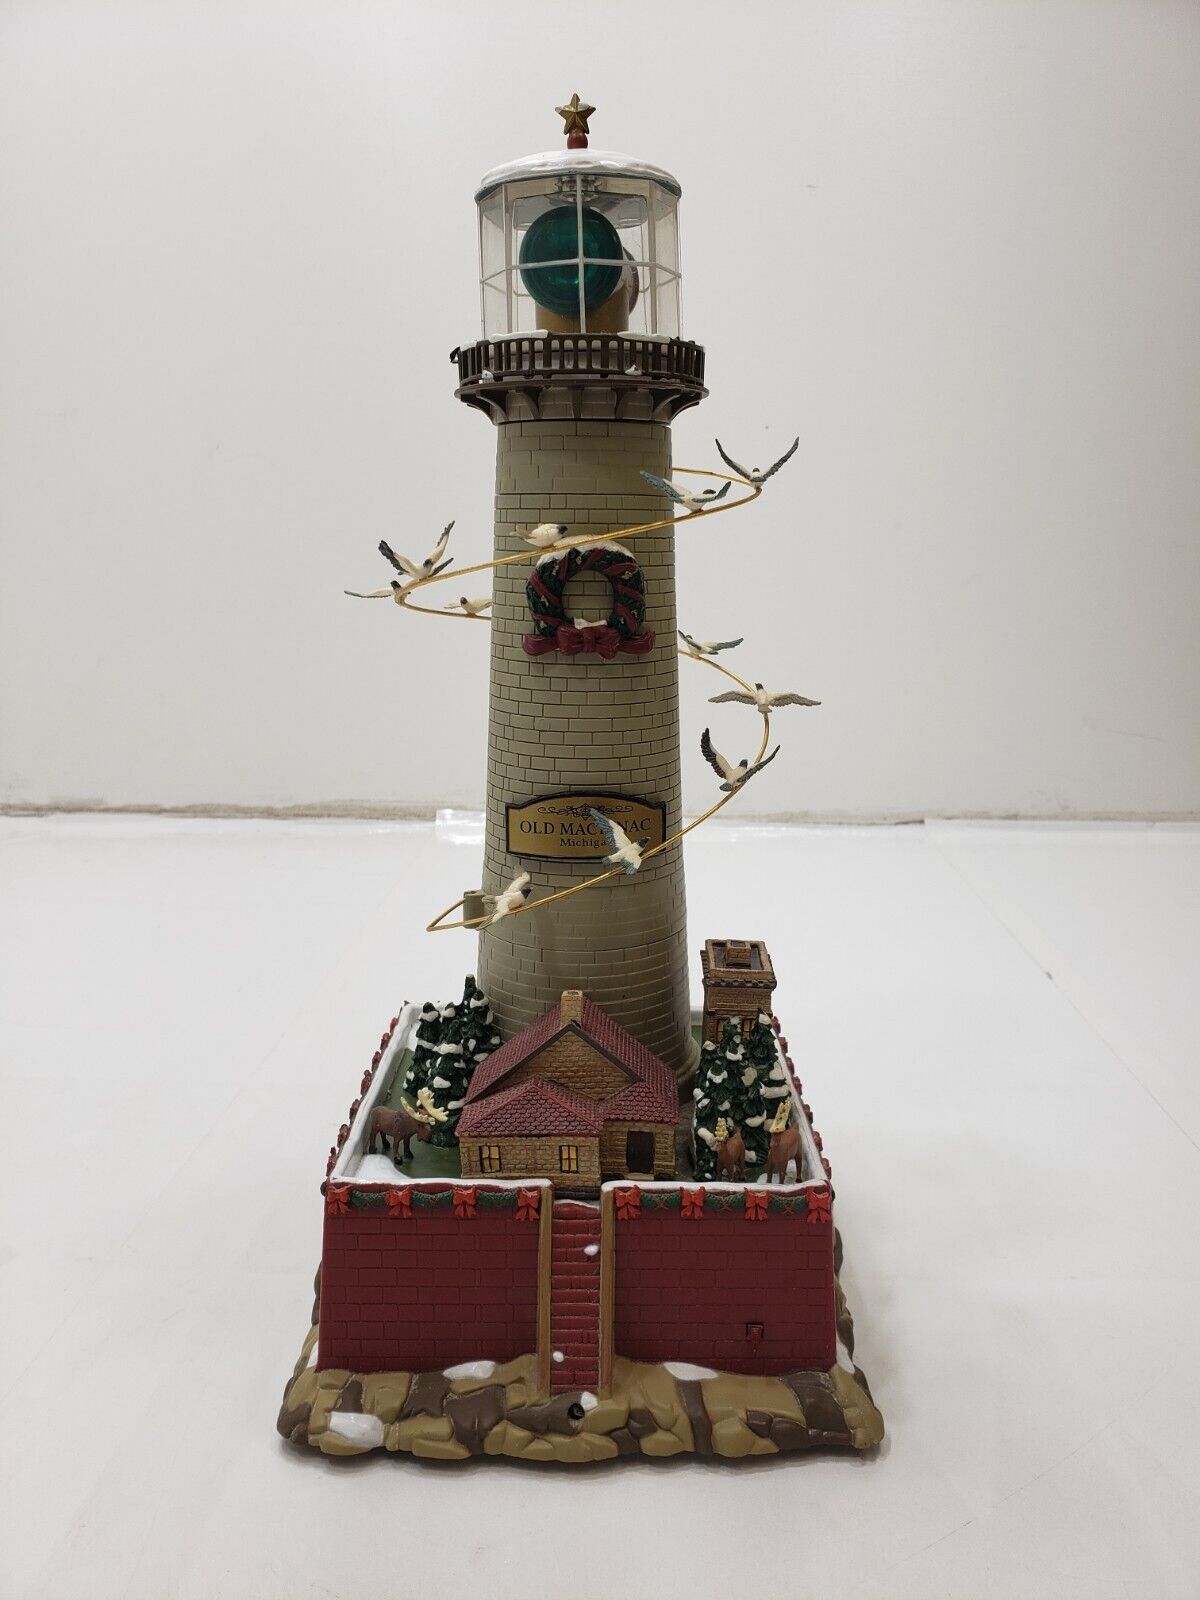 Mr Christmas Holiday Lighthouse Old Mackinac Michigan - Animated & Sounds 14”